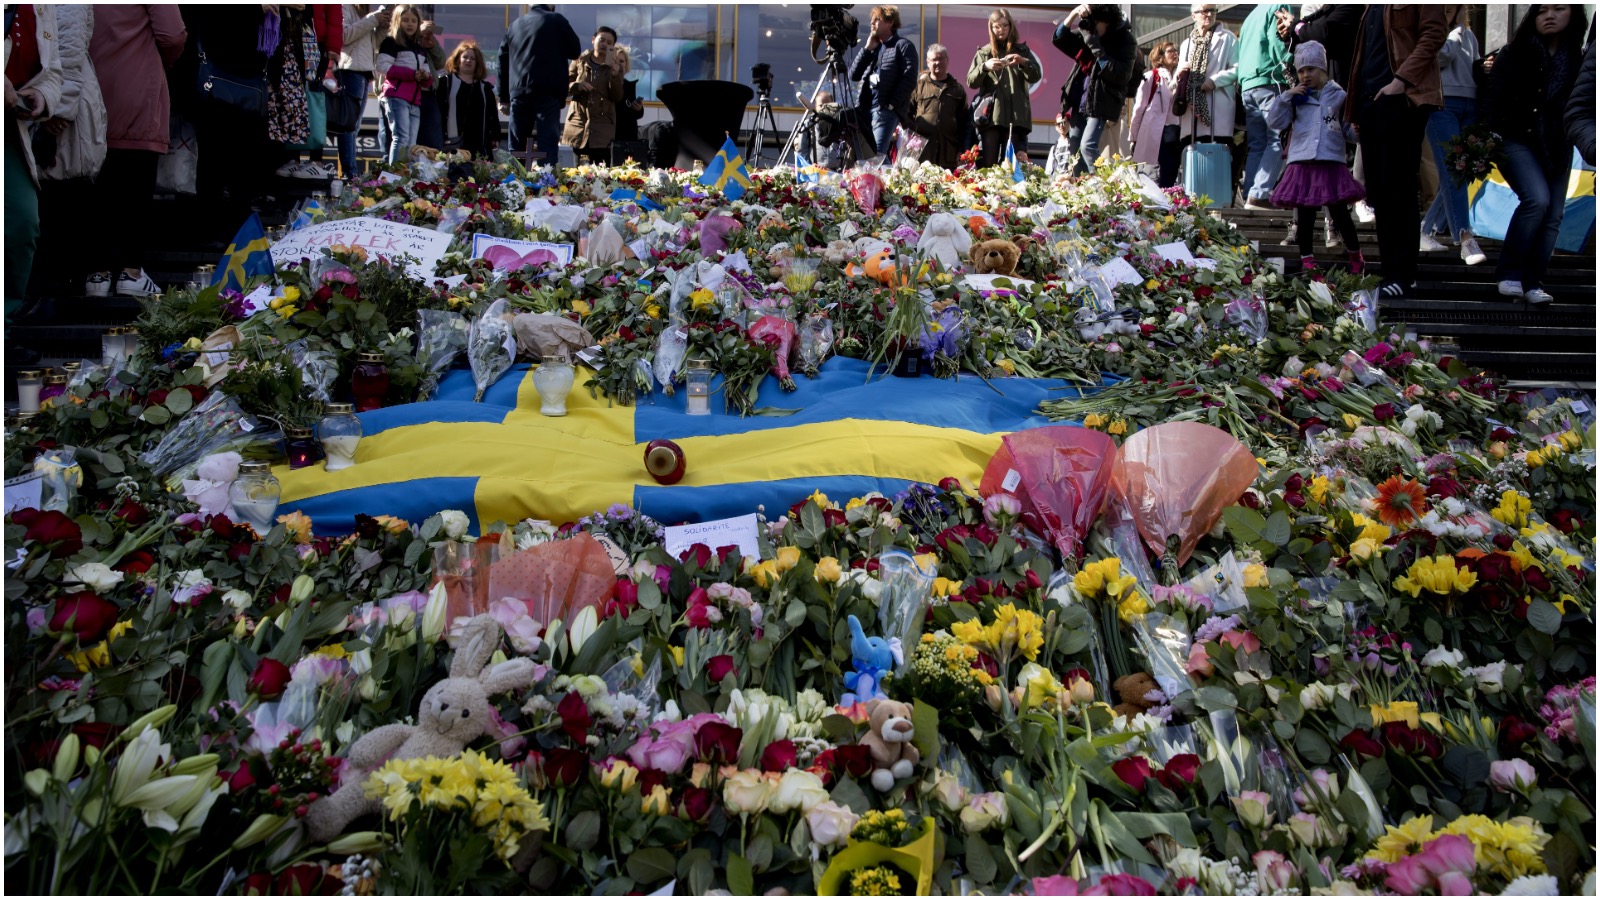 Thomas Hegghammer: Antallet af terrorforsøg i Europa stiger sandsynligvis de næste 5-10 år